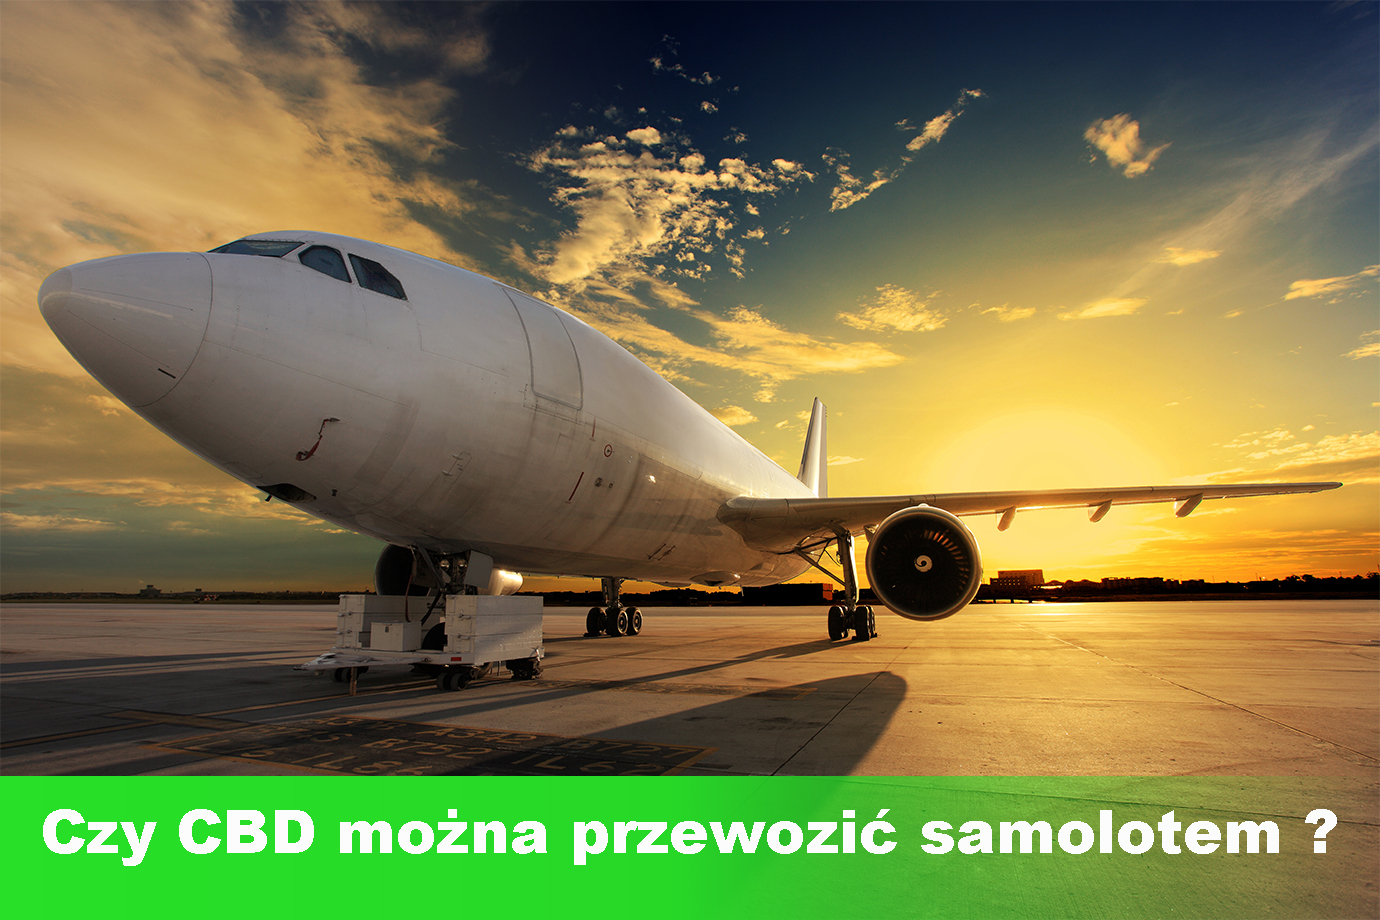 Czy wiesz, że przewożenie produktów CBD samolotem może skończyć się kłopotami? Jak uniknąć problemów na lotnisku!